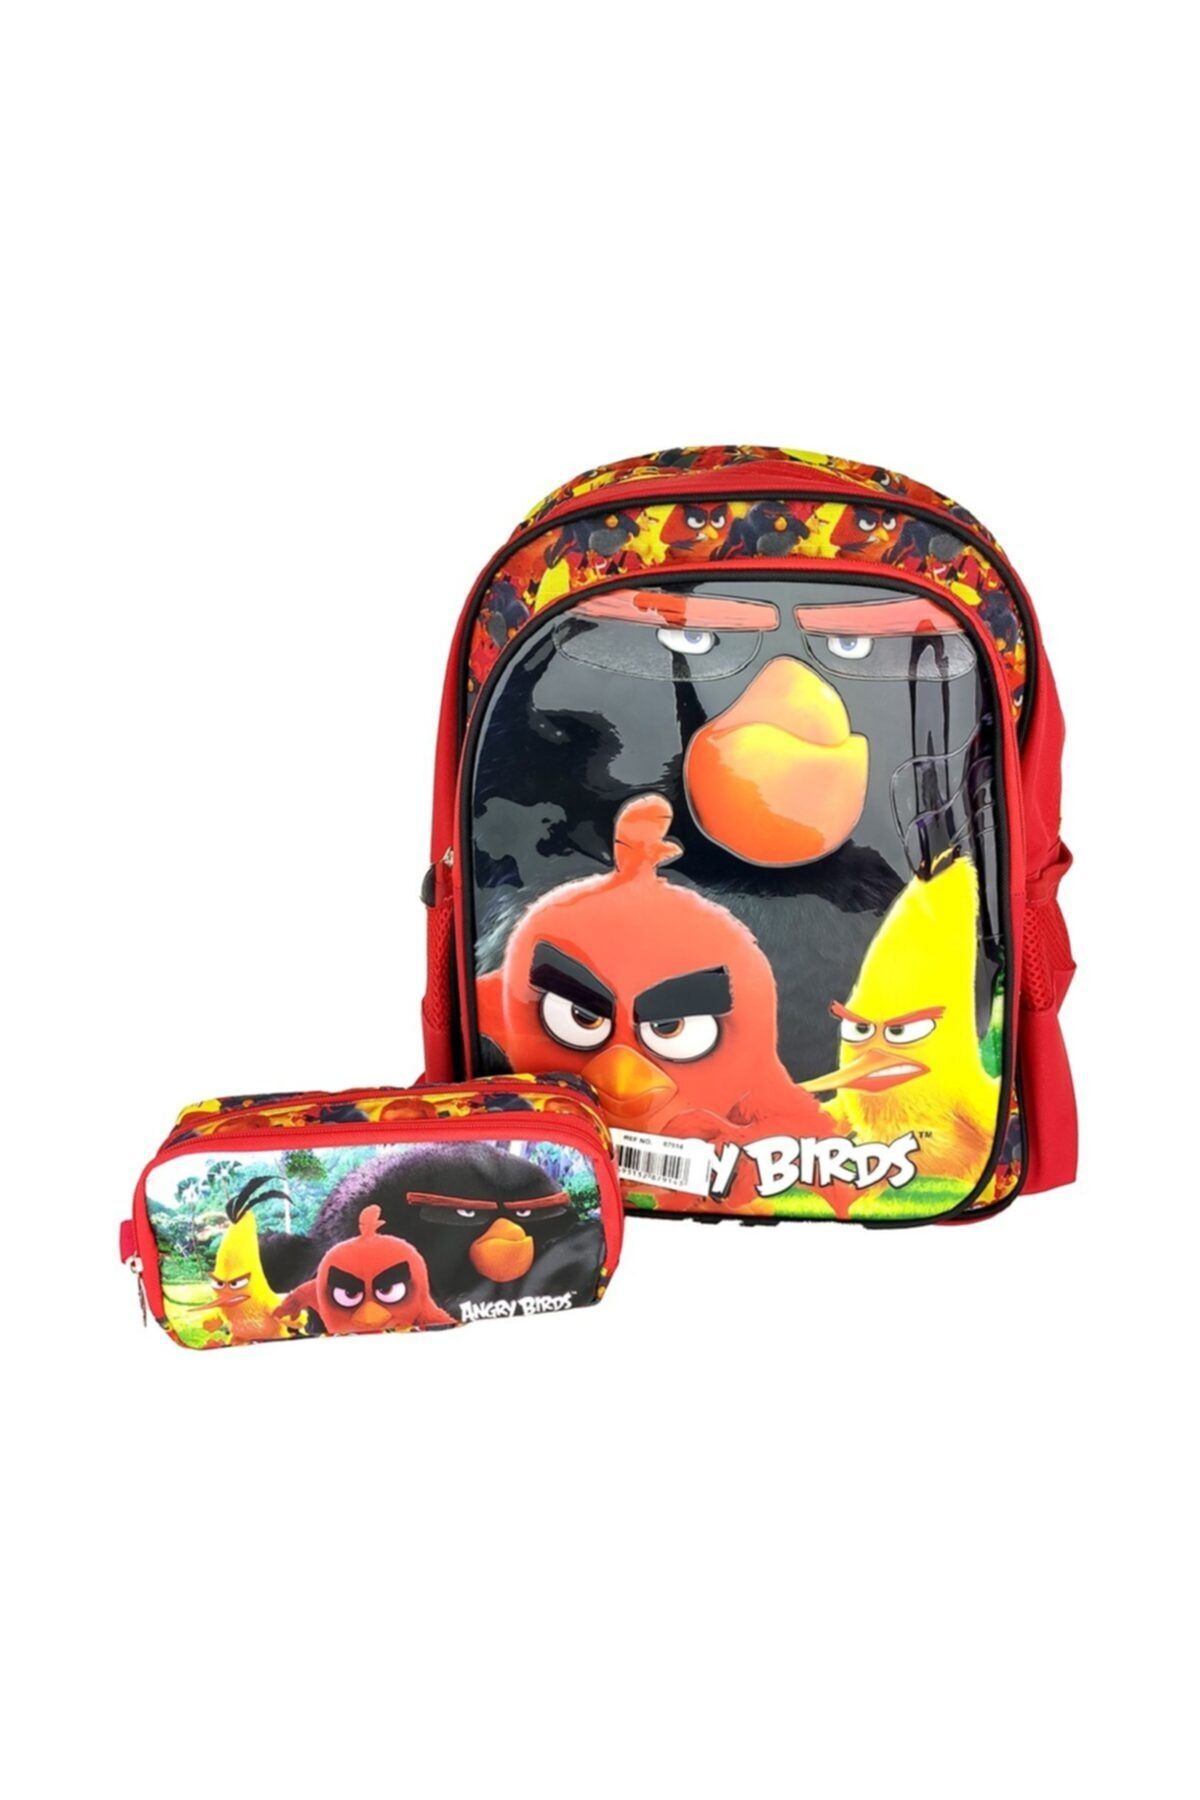 Angry Birds Angry Bırds Çanta Ve Kalem Kutu